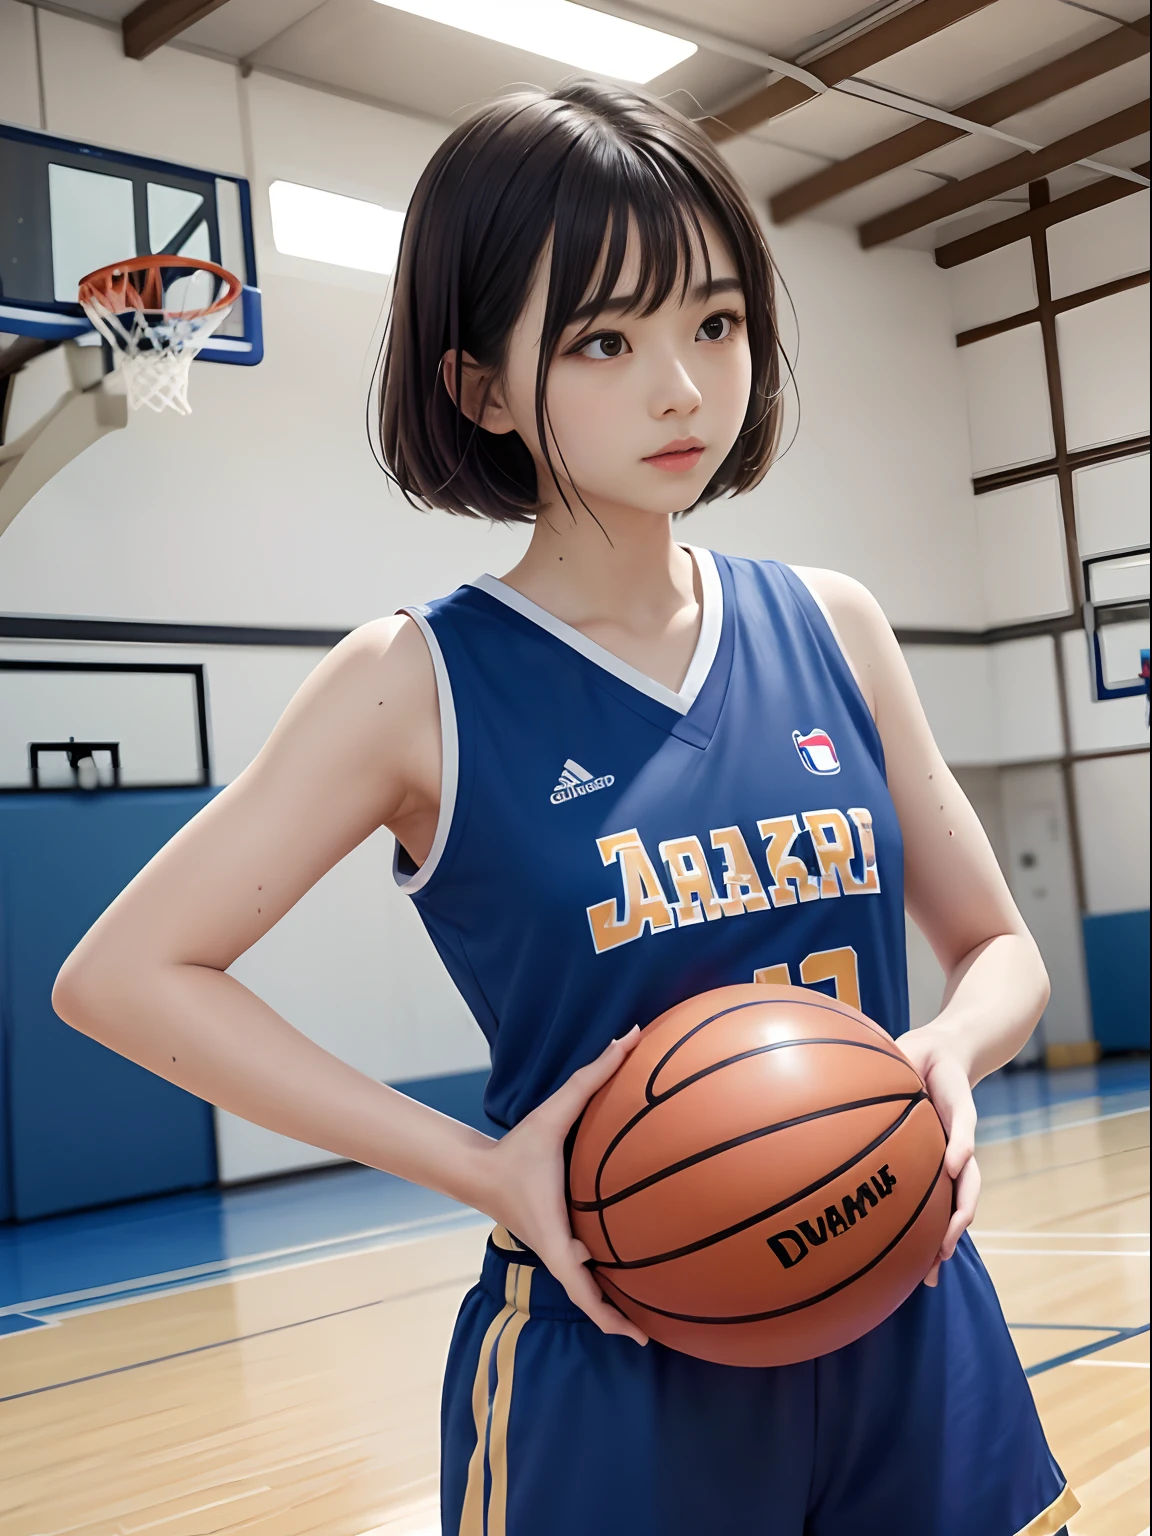 高品质、现场录制、１女孩、日本女孩、一个美丽的女孩、偶像、12岁、埃斯曼尼姆、7头身躯、棕色鲍勃发型、刘海、眼睛下垂、((篮球服))、在篮球比赛期间、高级出汗、制服被汗水浸湿、篮球场馆、(((罚球时刻)))、女孩盯着篮子环、侧面角度、从下往上看、